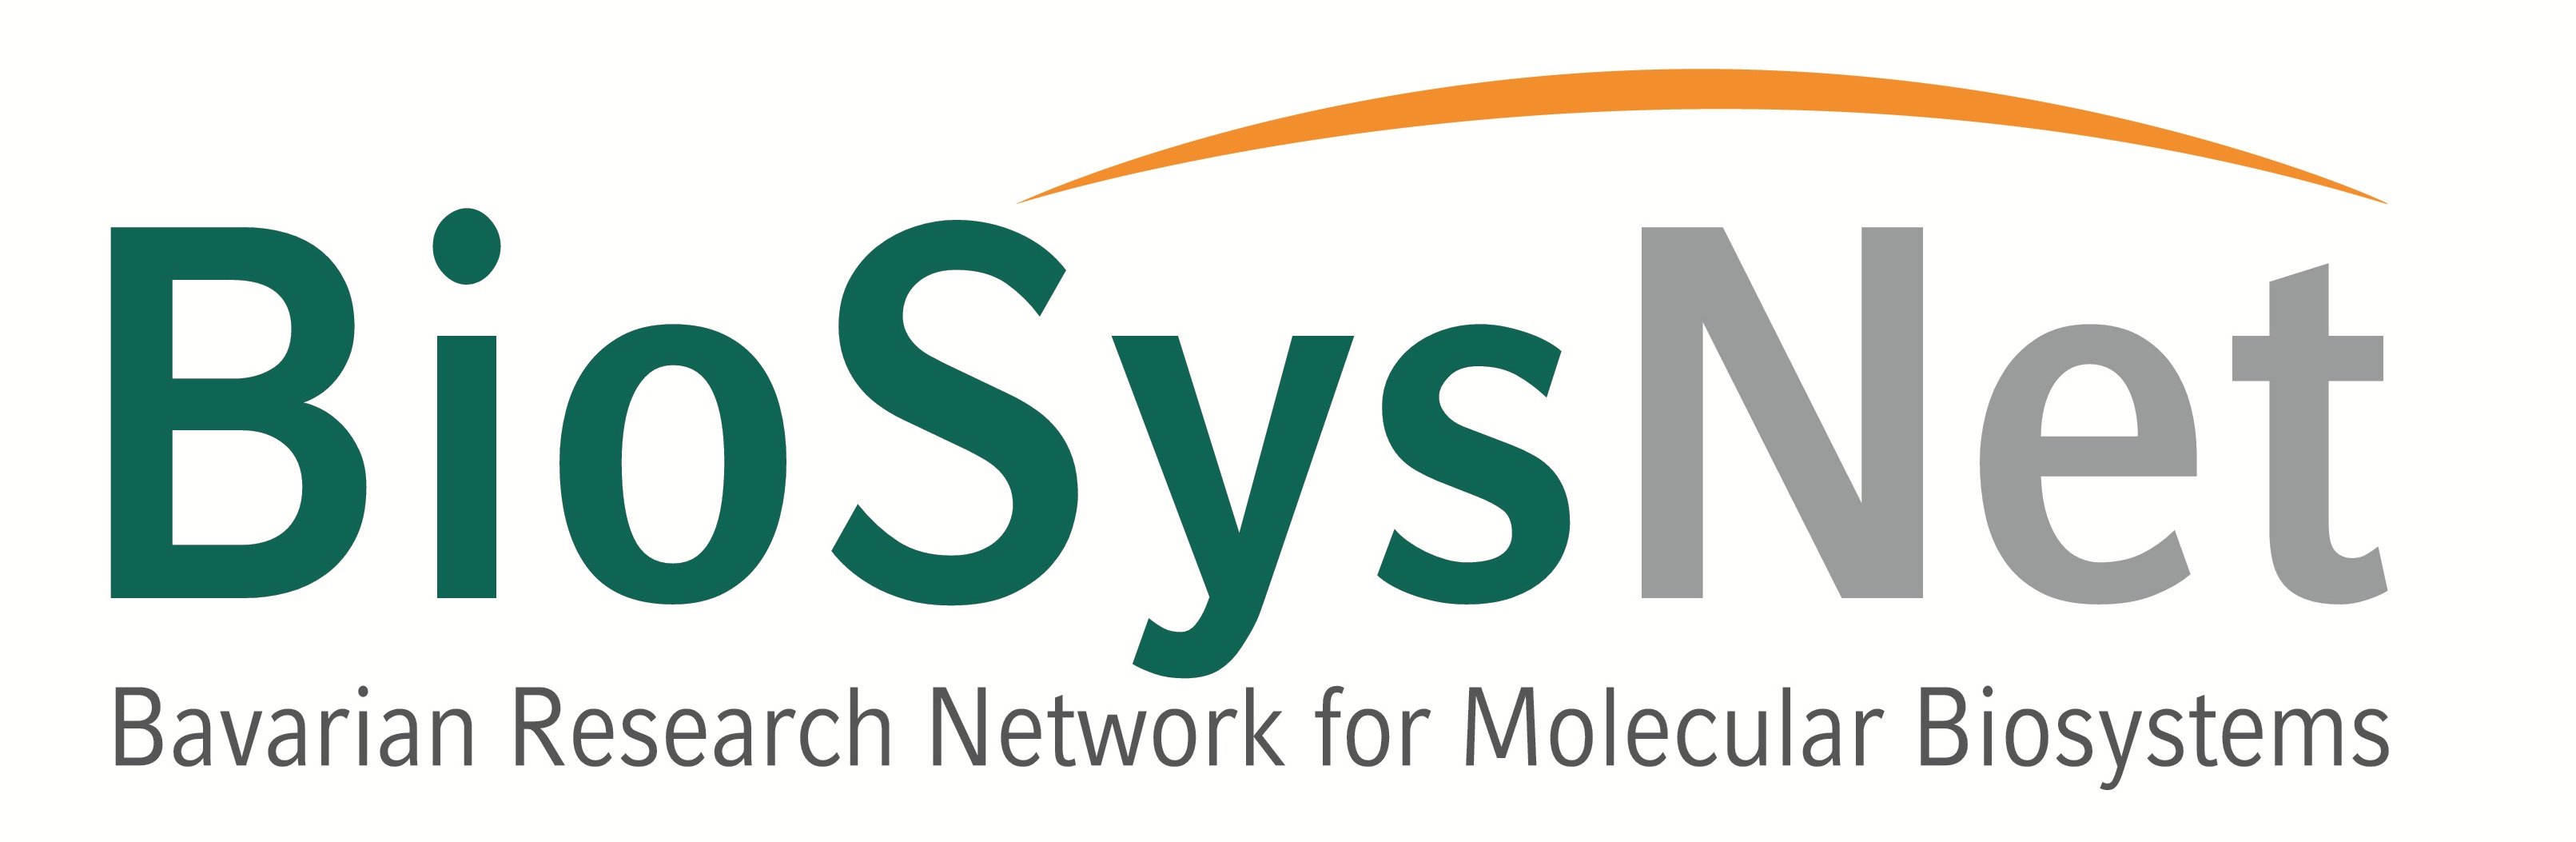 BioSysNet-Logo.jpg